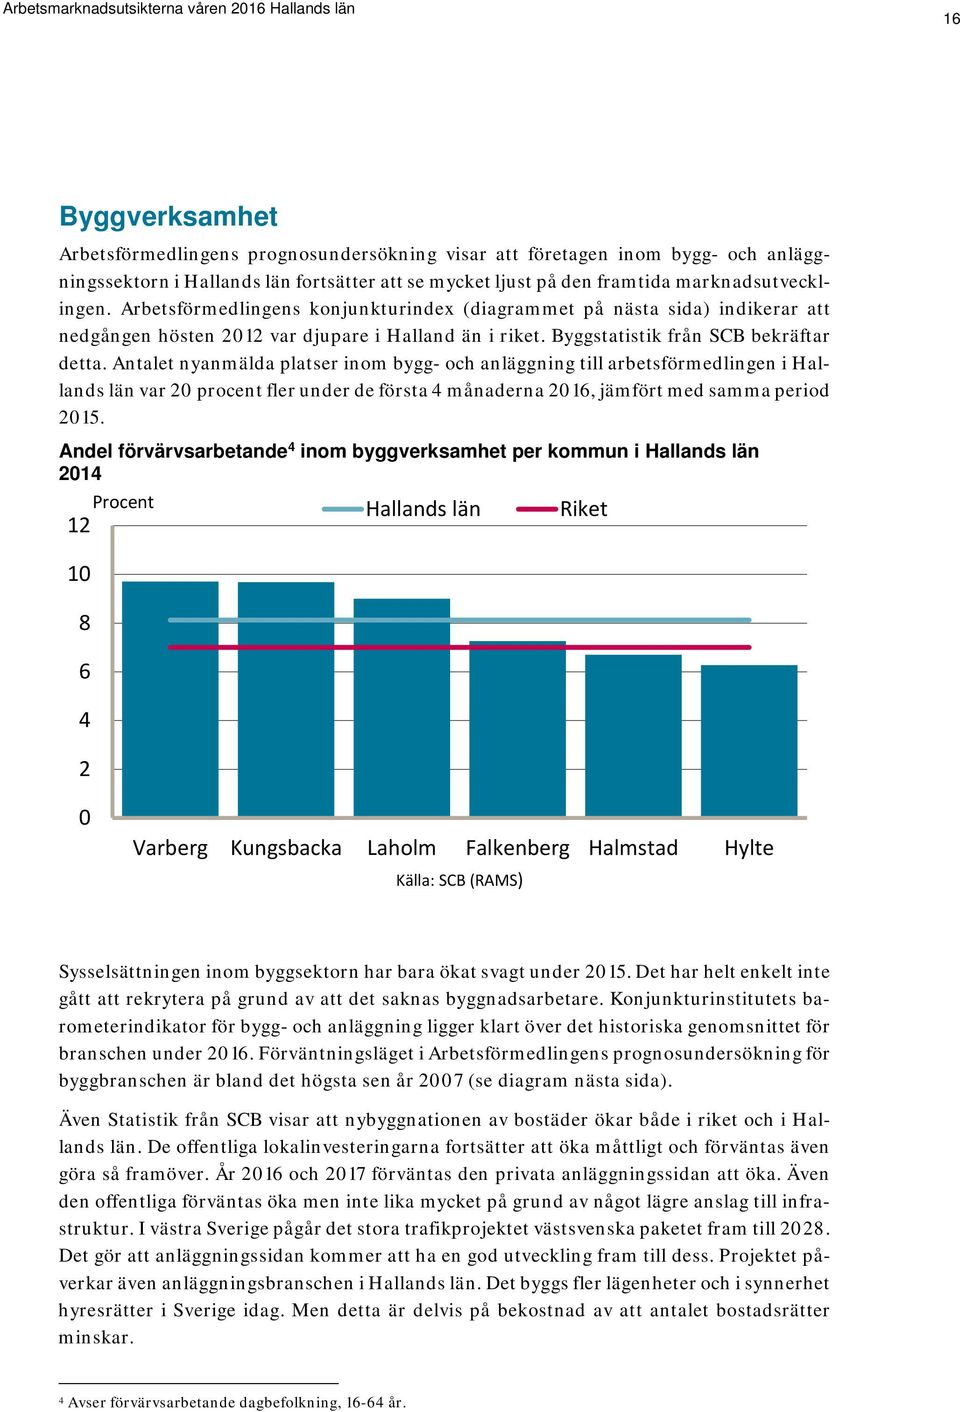 Antalet nyanmälda platser inom bygg- och anläggning till arbetsförmedlingen i Hallands län var 20 procent fler under de första 4 månaderna 2016, jämfört med samma period 2015.